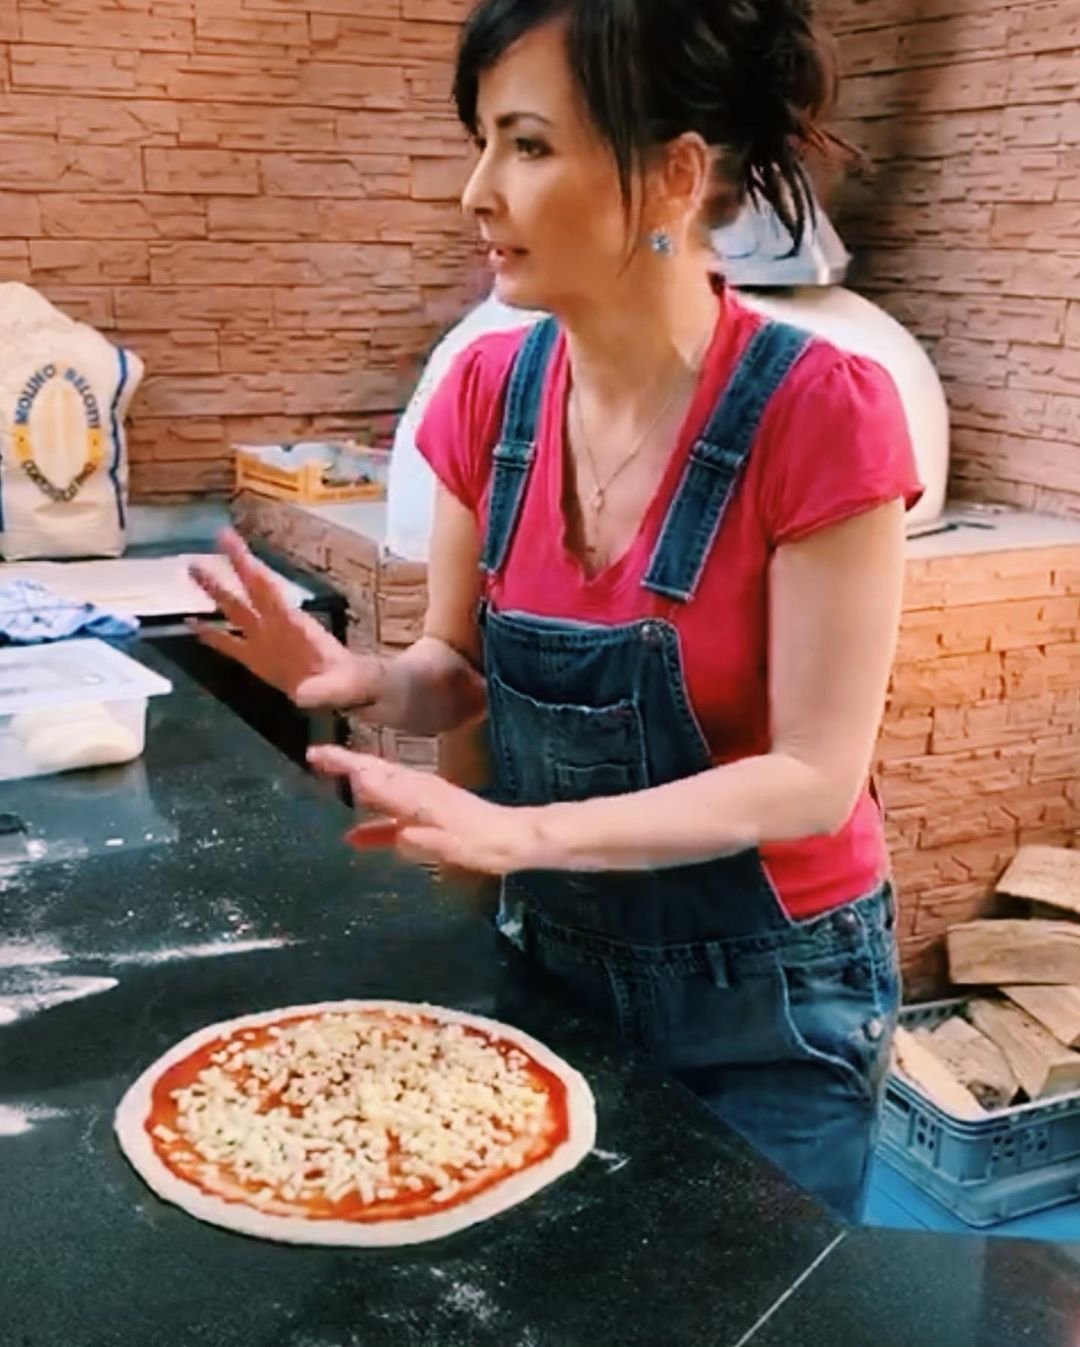 Daniela Šinkorá má dočasnou, &#34;koronavirovou práci&#34; - dělá pizzu